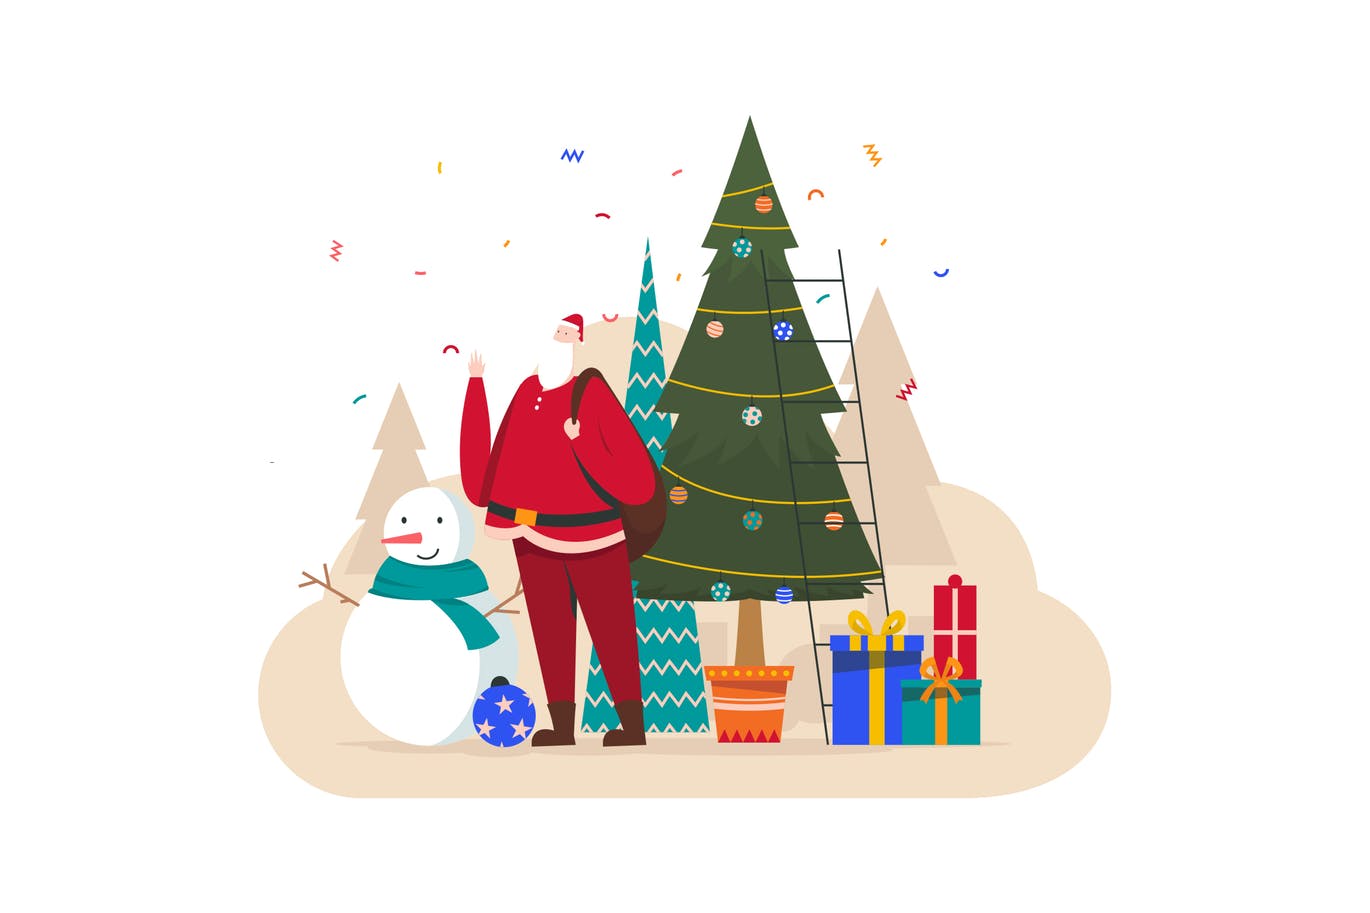 雪人/圣诞老人/圣诞树/礼物圣诞节主题插画设计素材 Christmas Illustration插图